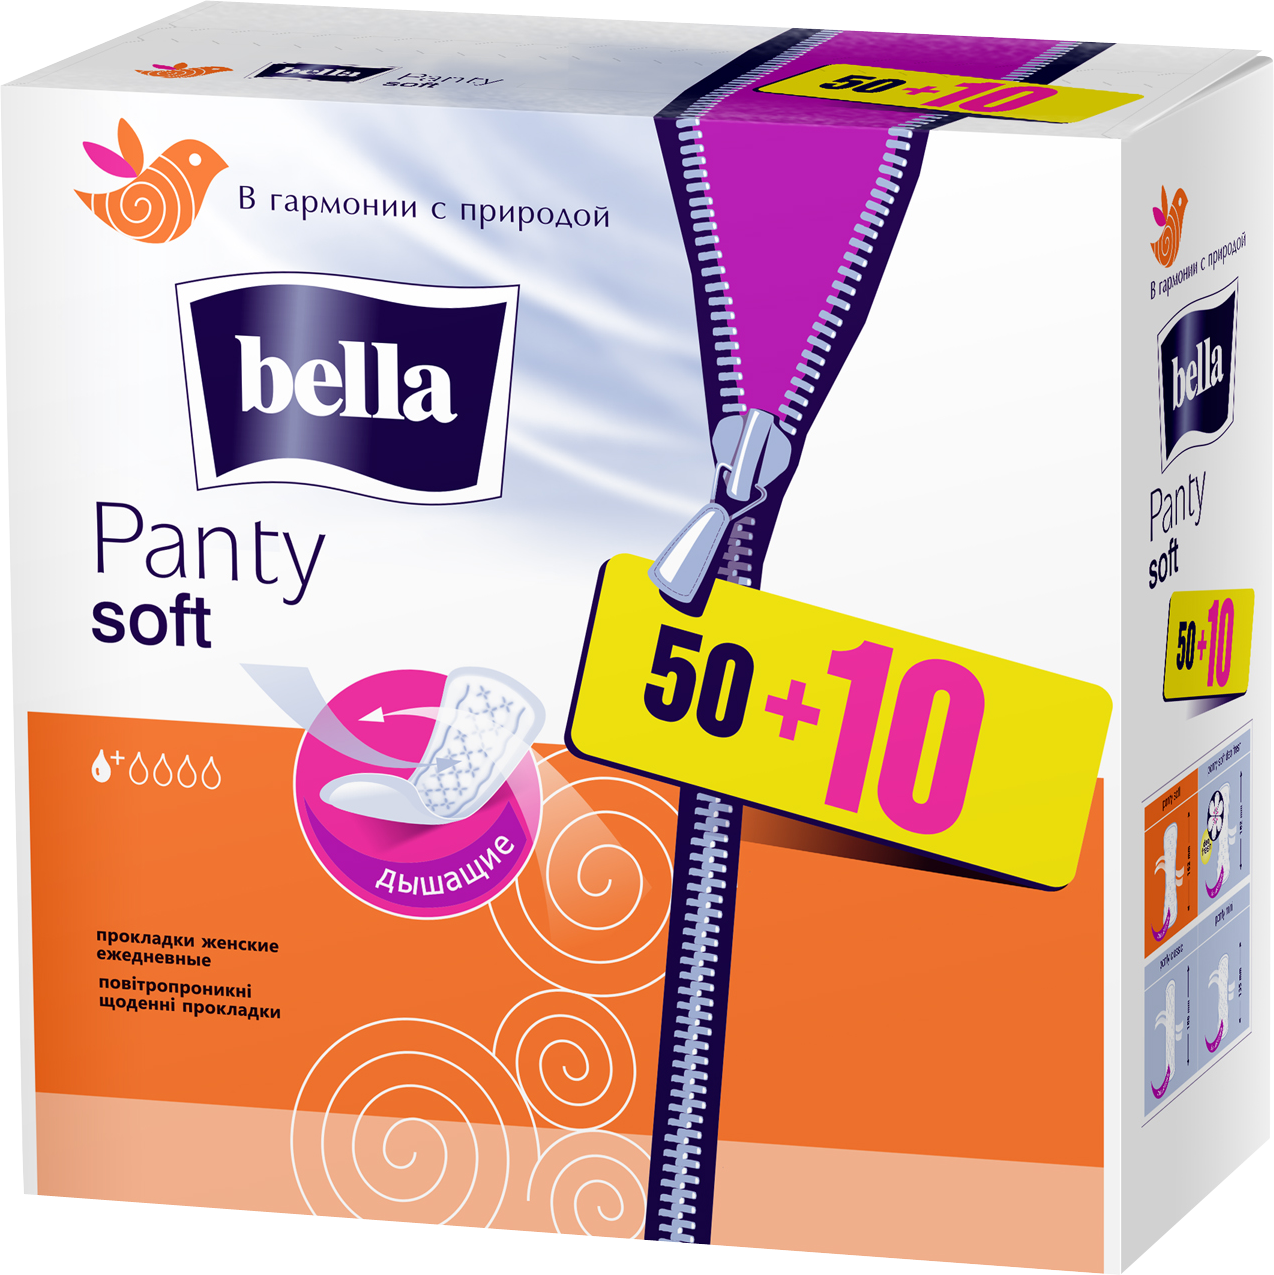 Ежедневные прокладки Bella Panty Soft 50+10 шт. - фото 1